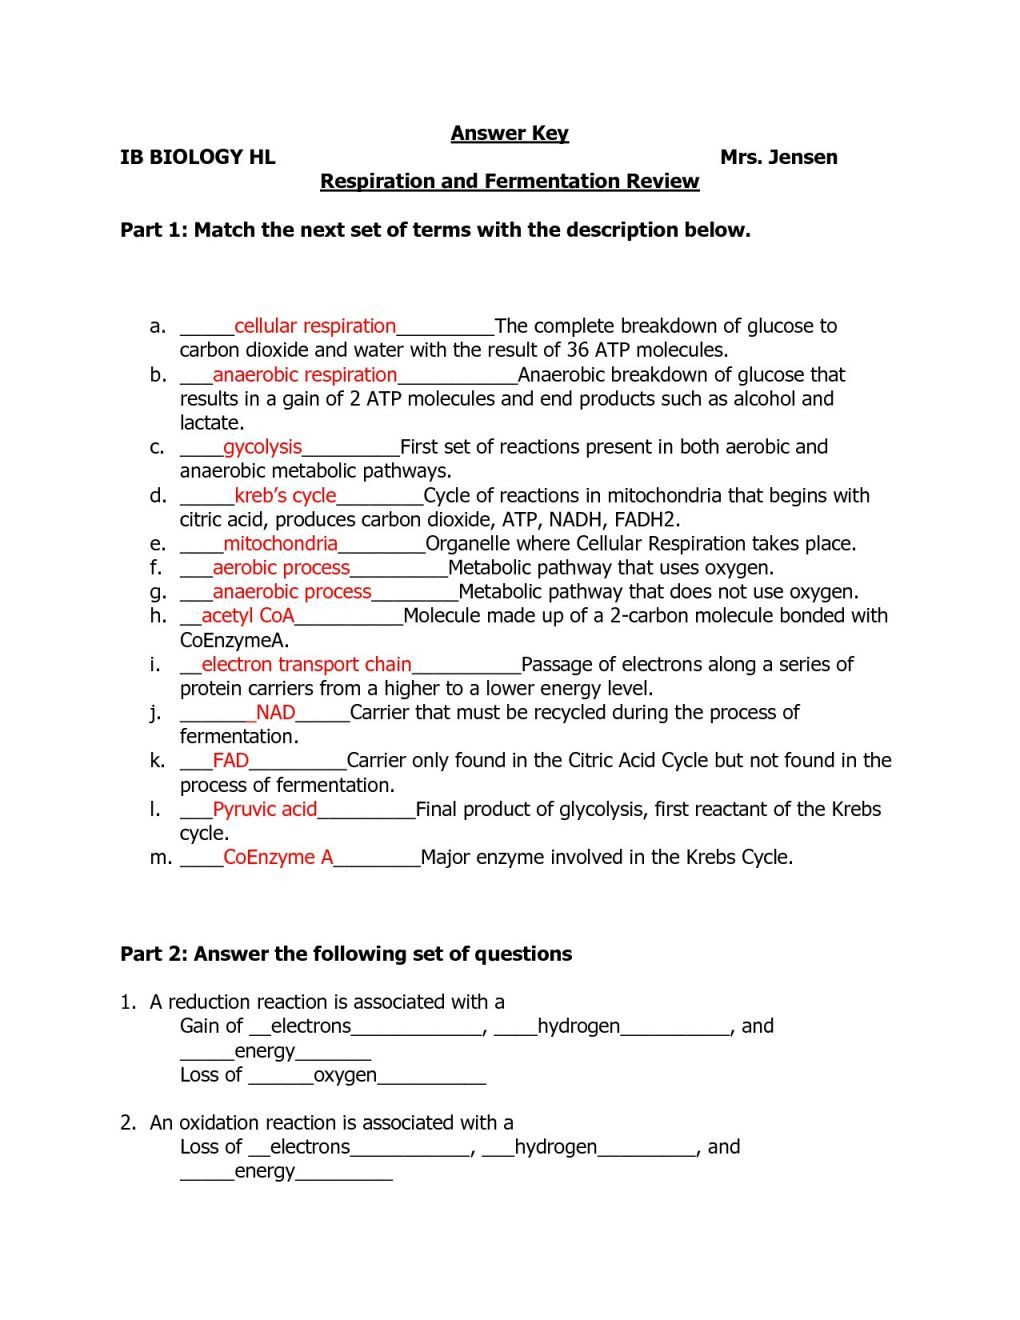 Macromolecules Worksheet 2 Answers Macromolecules and Nutrition Label Worksheet Answers Nidecmege